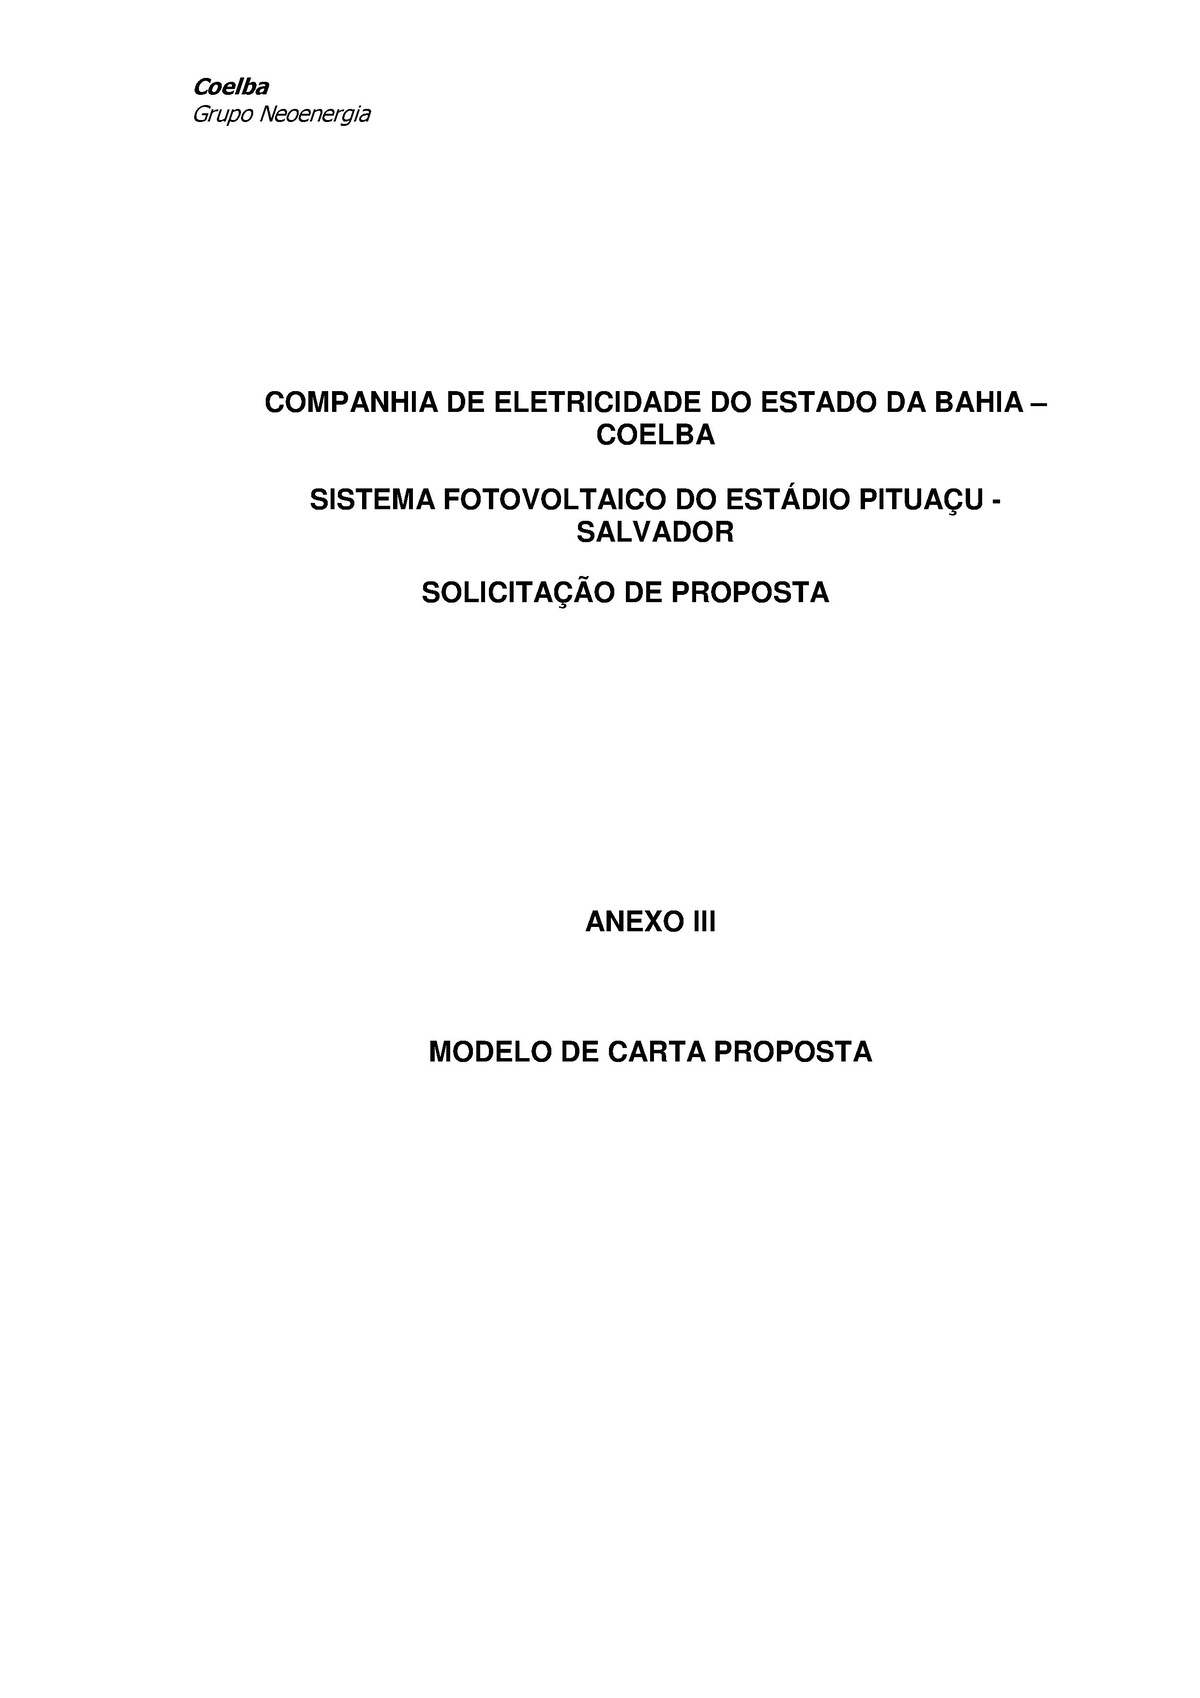 File:Modelo de Carta Proposta EDITAL - Pituaç - energypedia